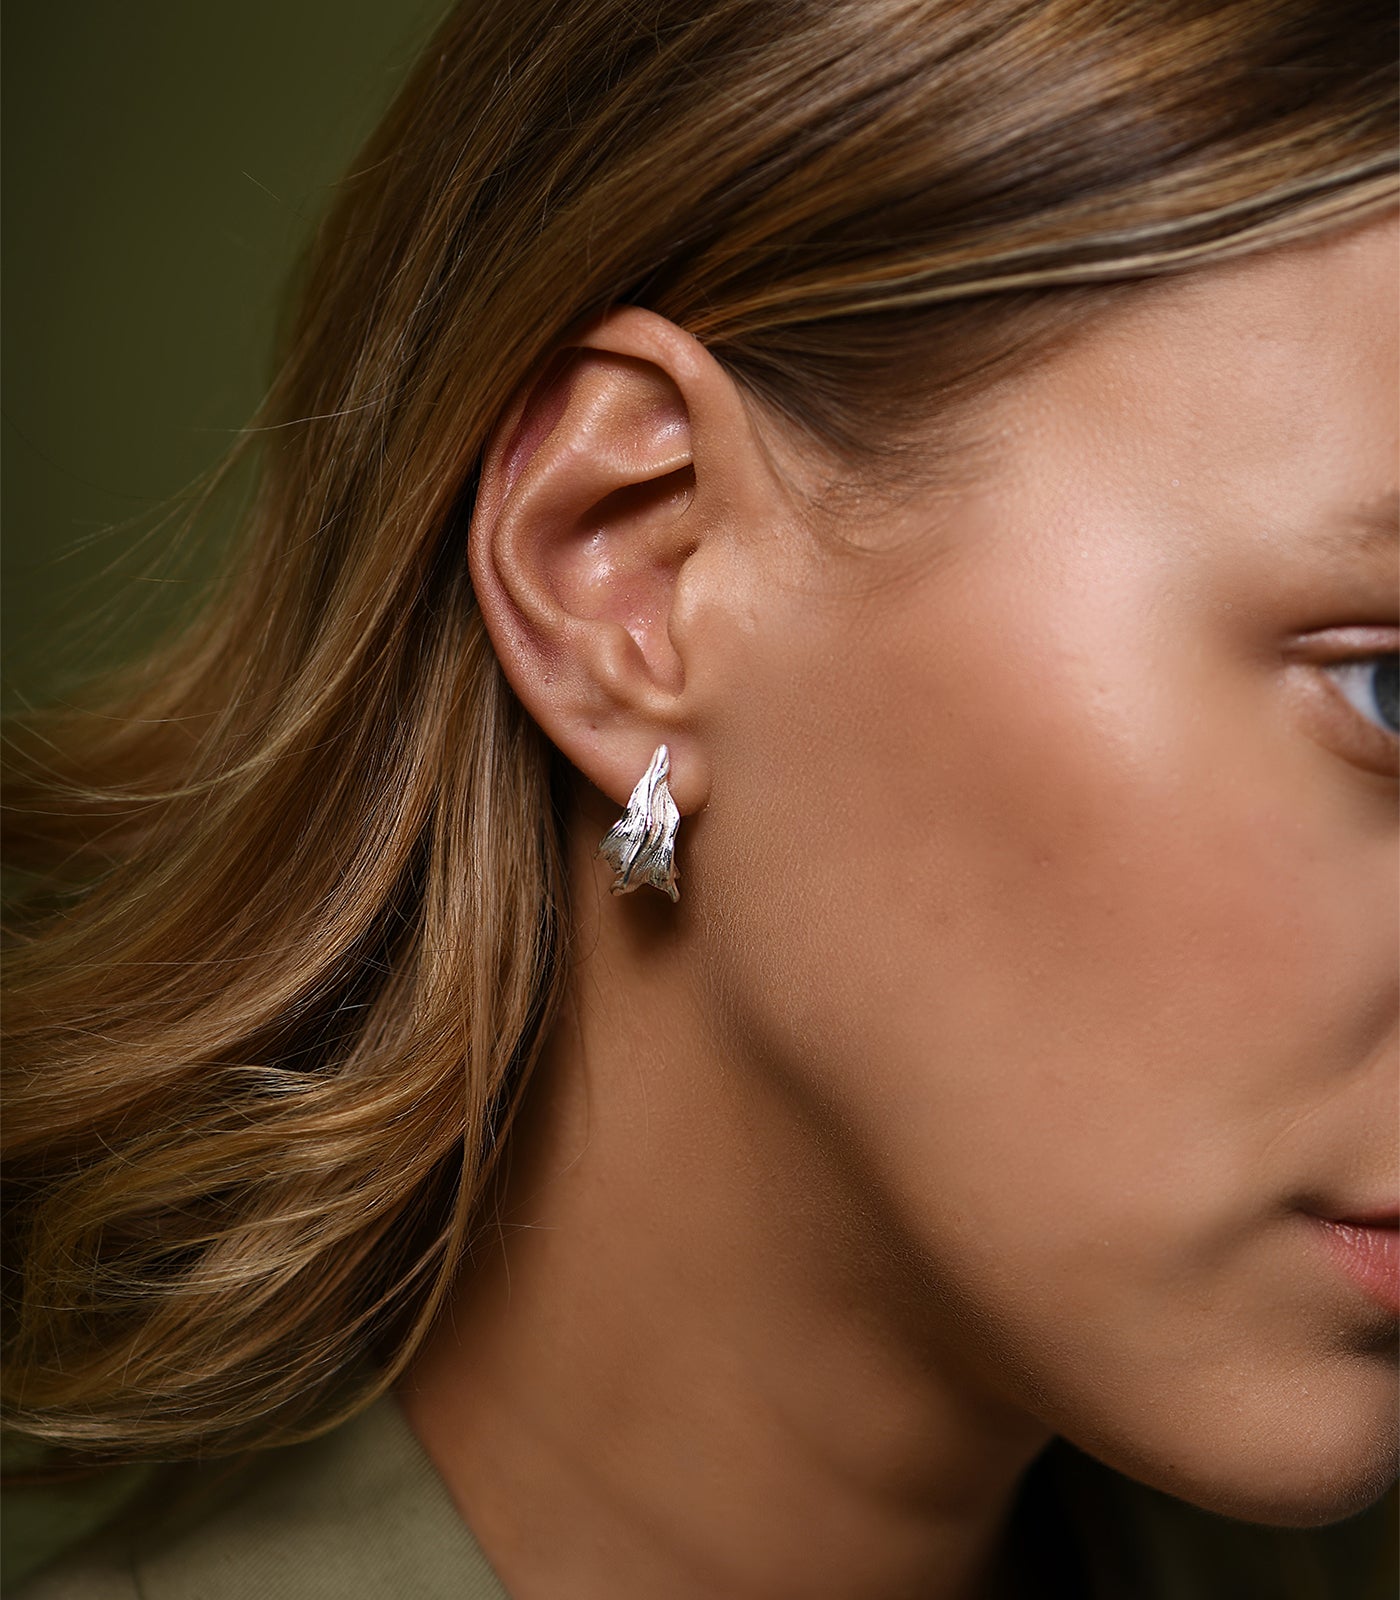 A model wears a pair of sterling silver, textured hoop earrings.